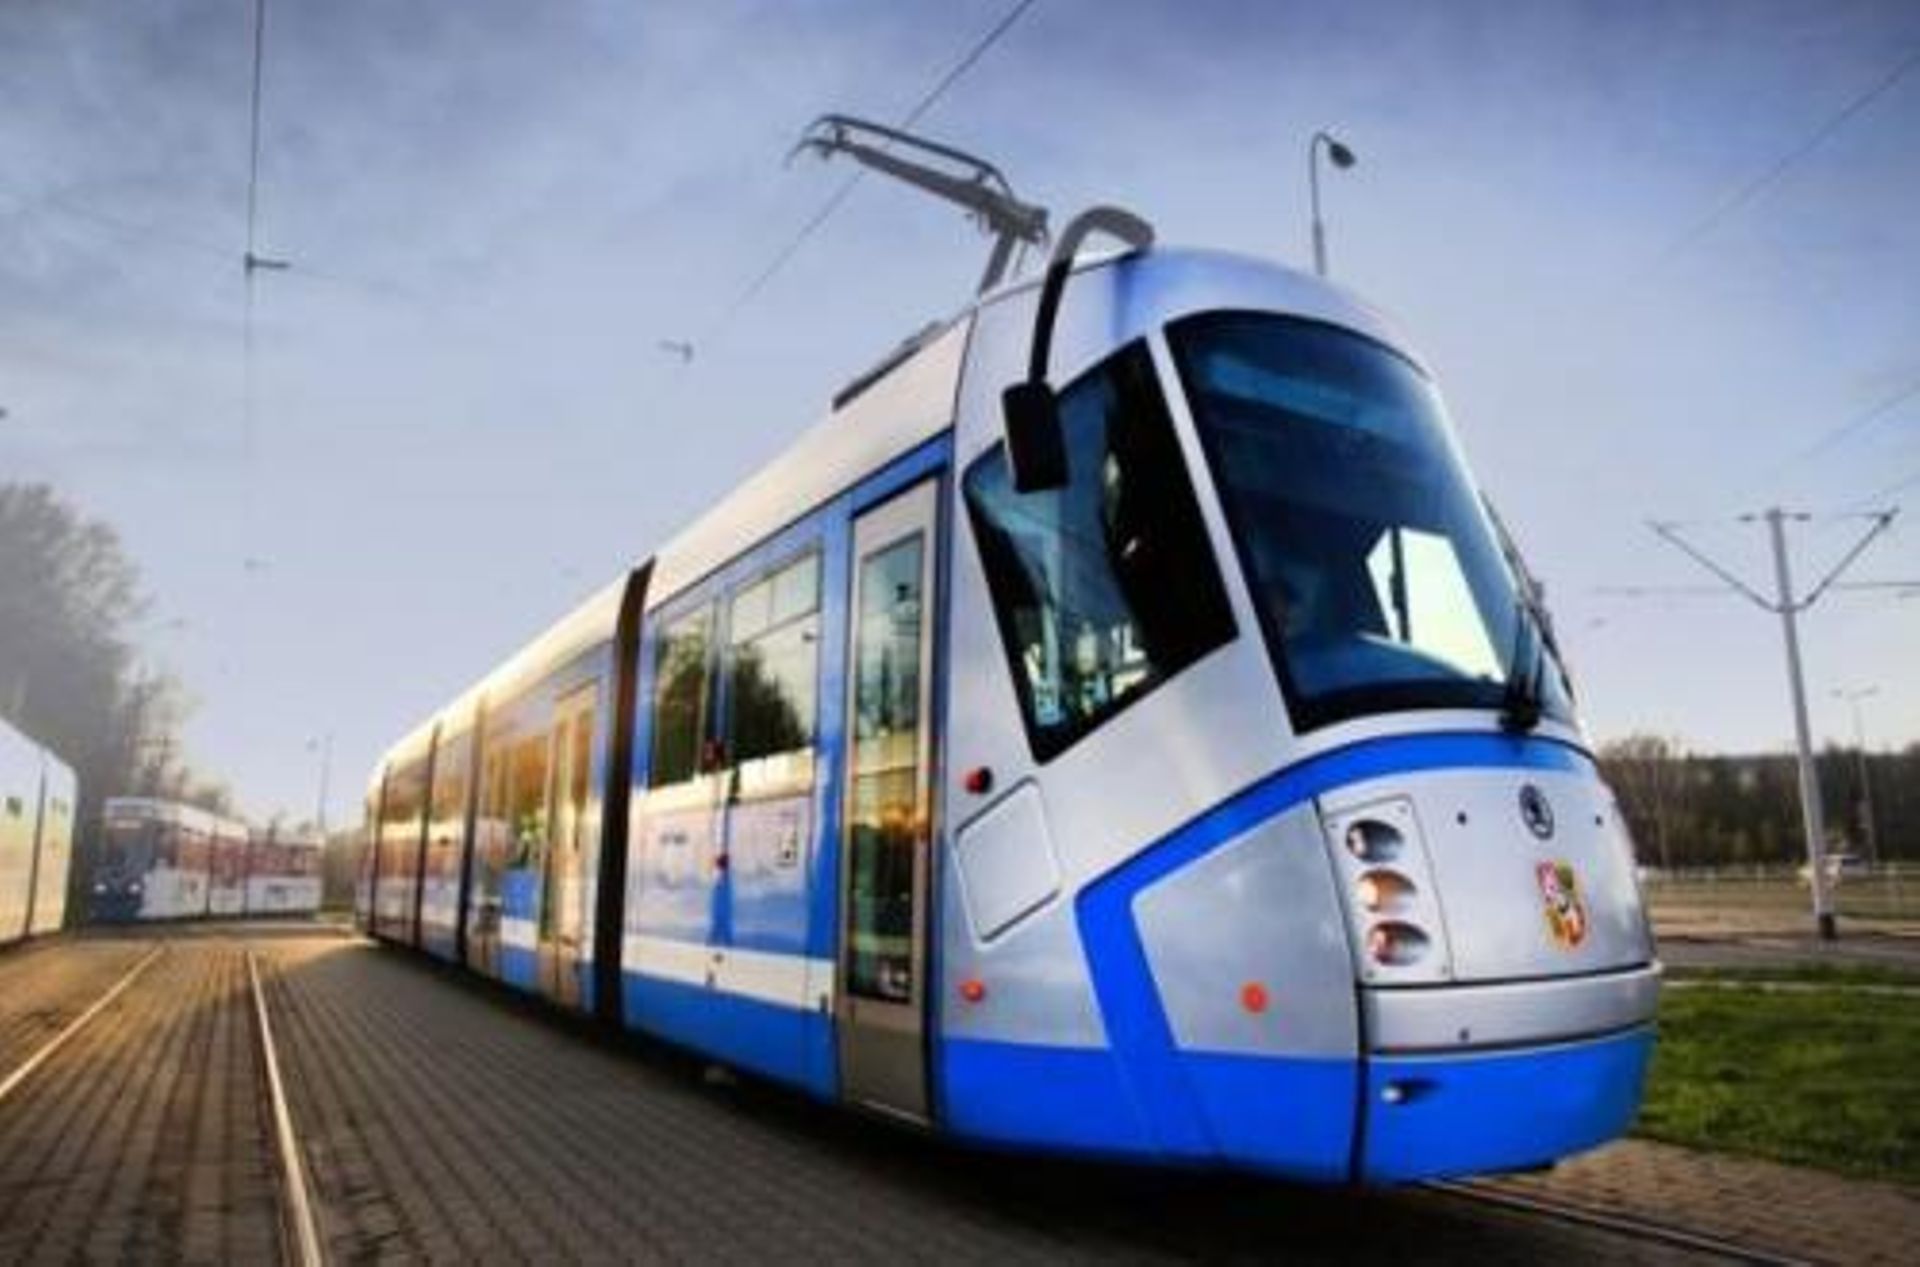 Wrocław: Miasto wyremontuje tramwaje za ponad 130 milionów? Są chętni